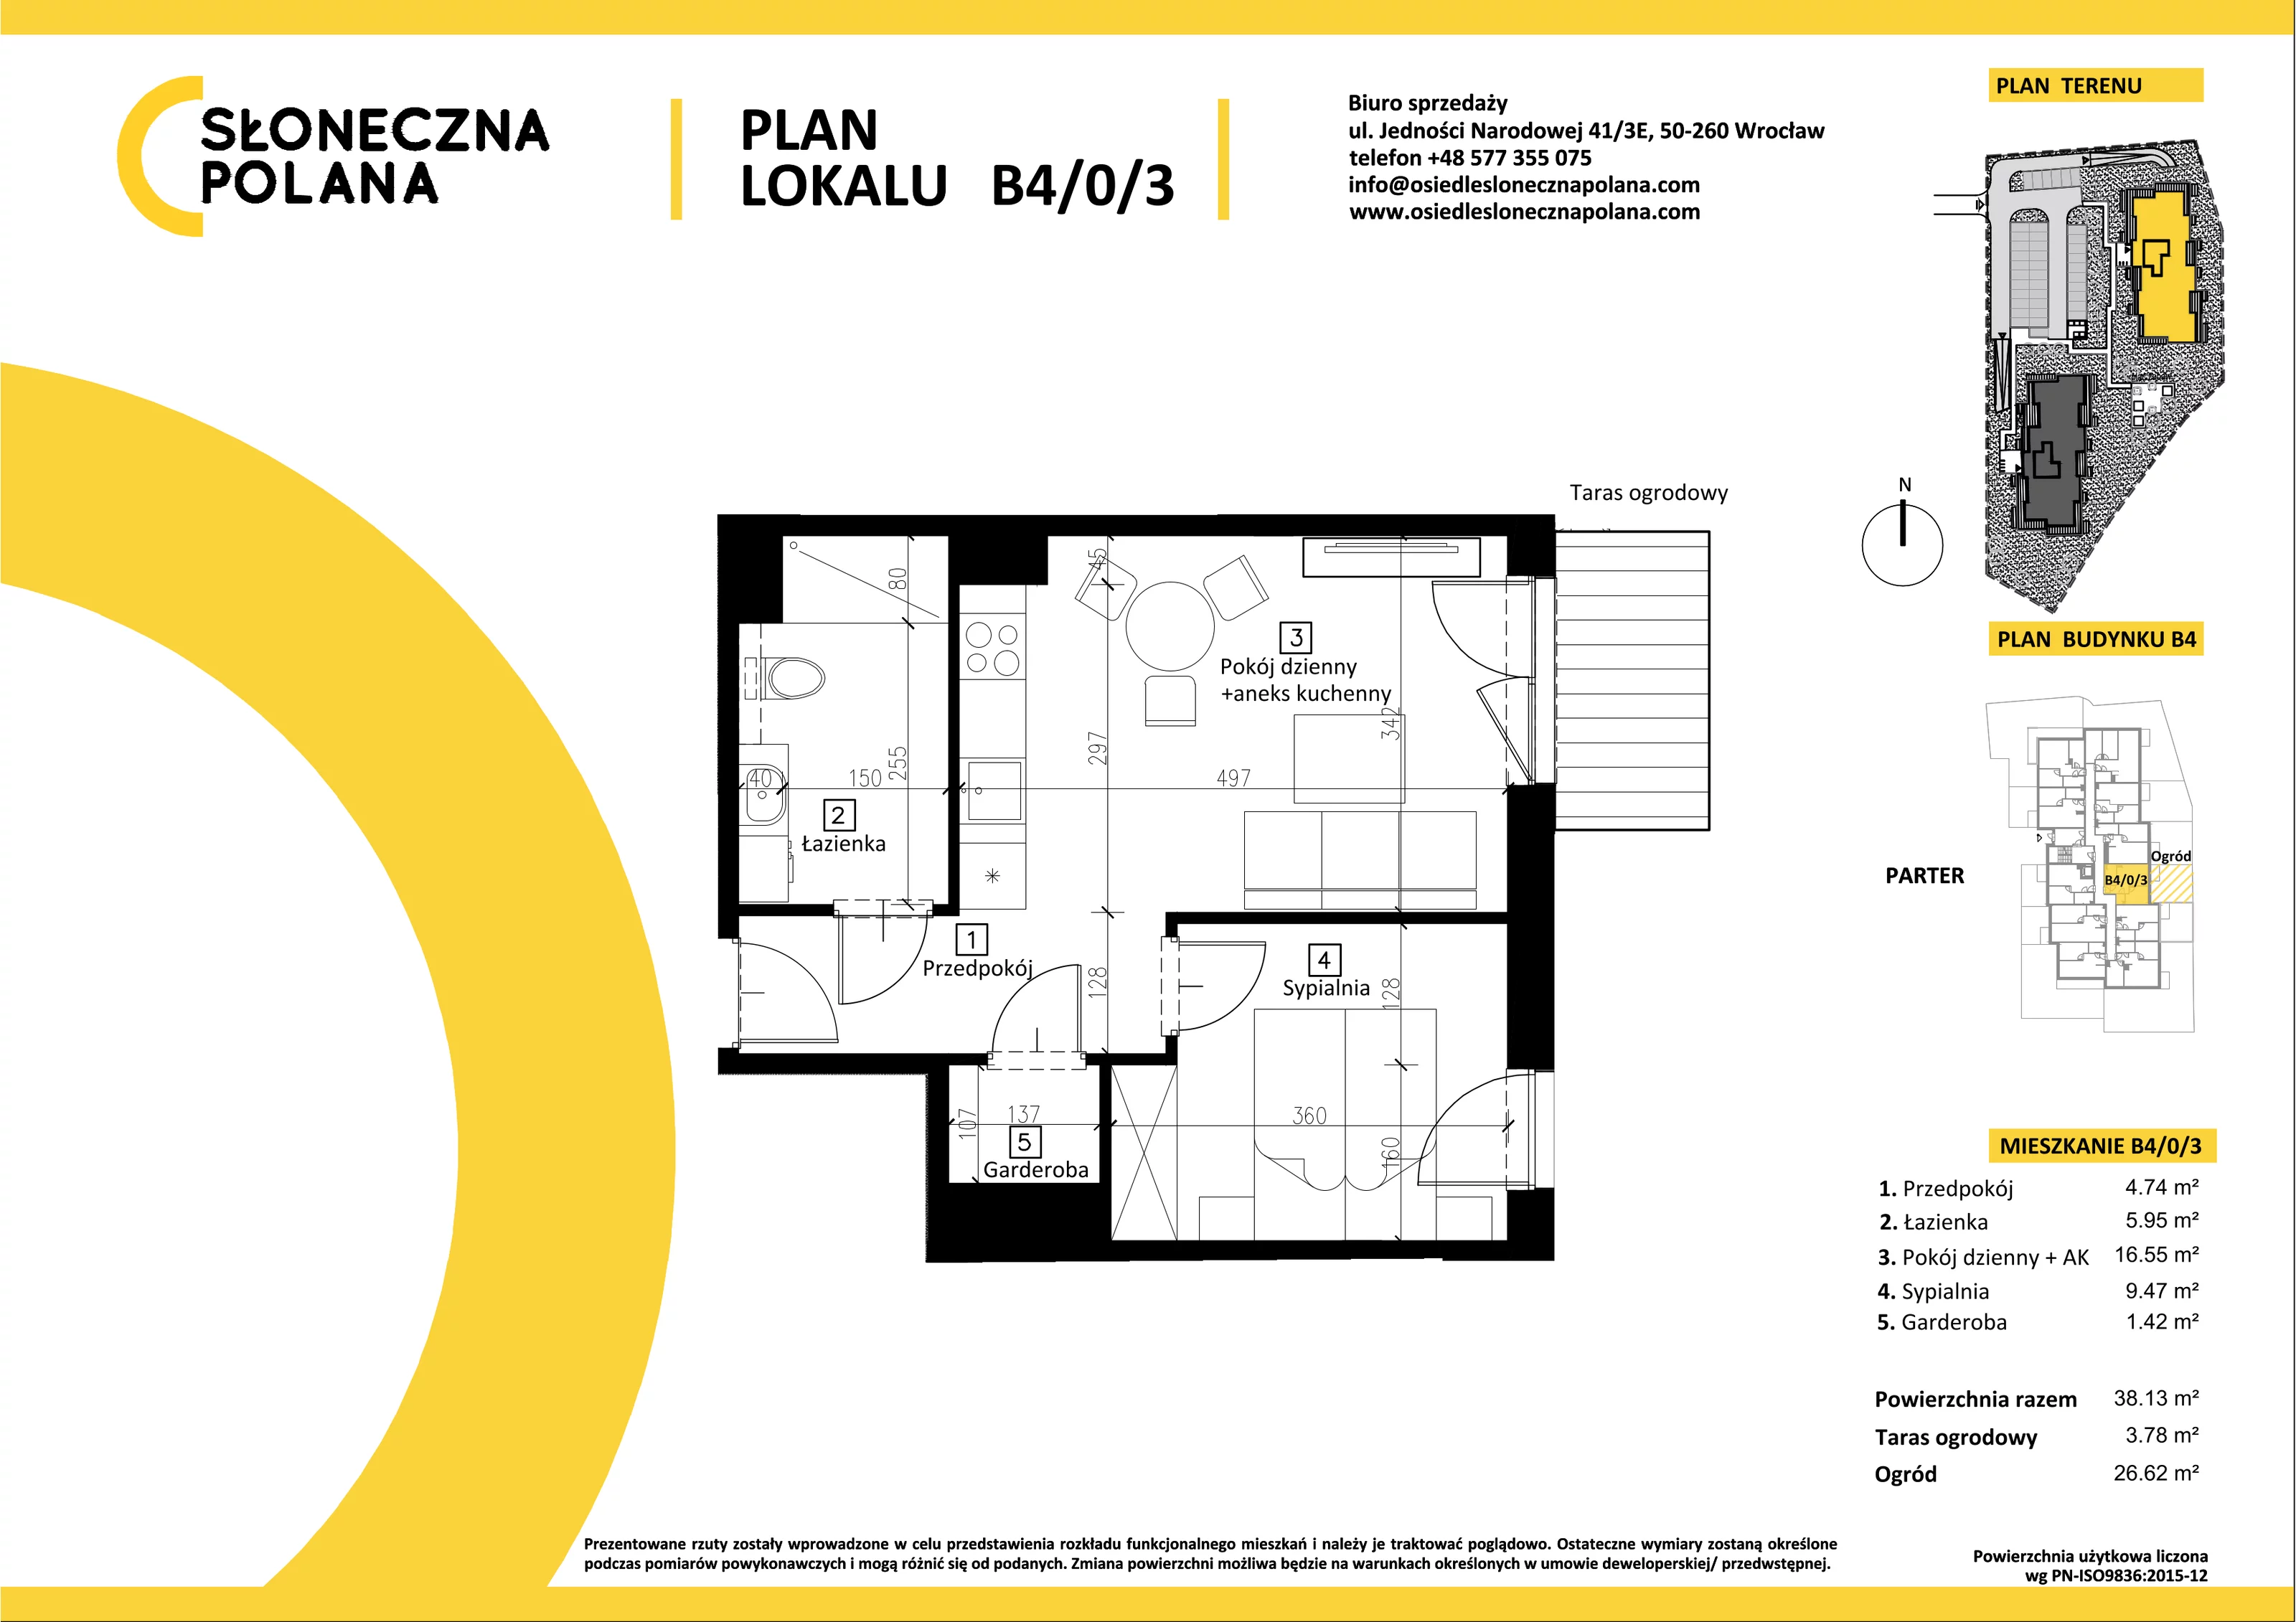 Mieszkanie 38,13 m², parter, oferta nr B4/0/3, Słoneczna Polana, Kudowa-Zdrój, ul. Bluszczowa